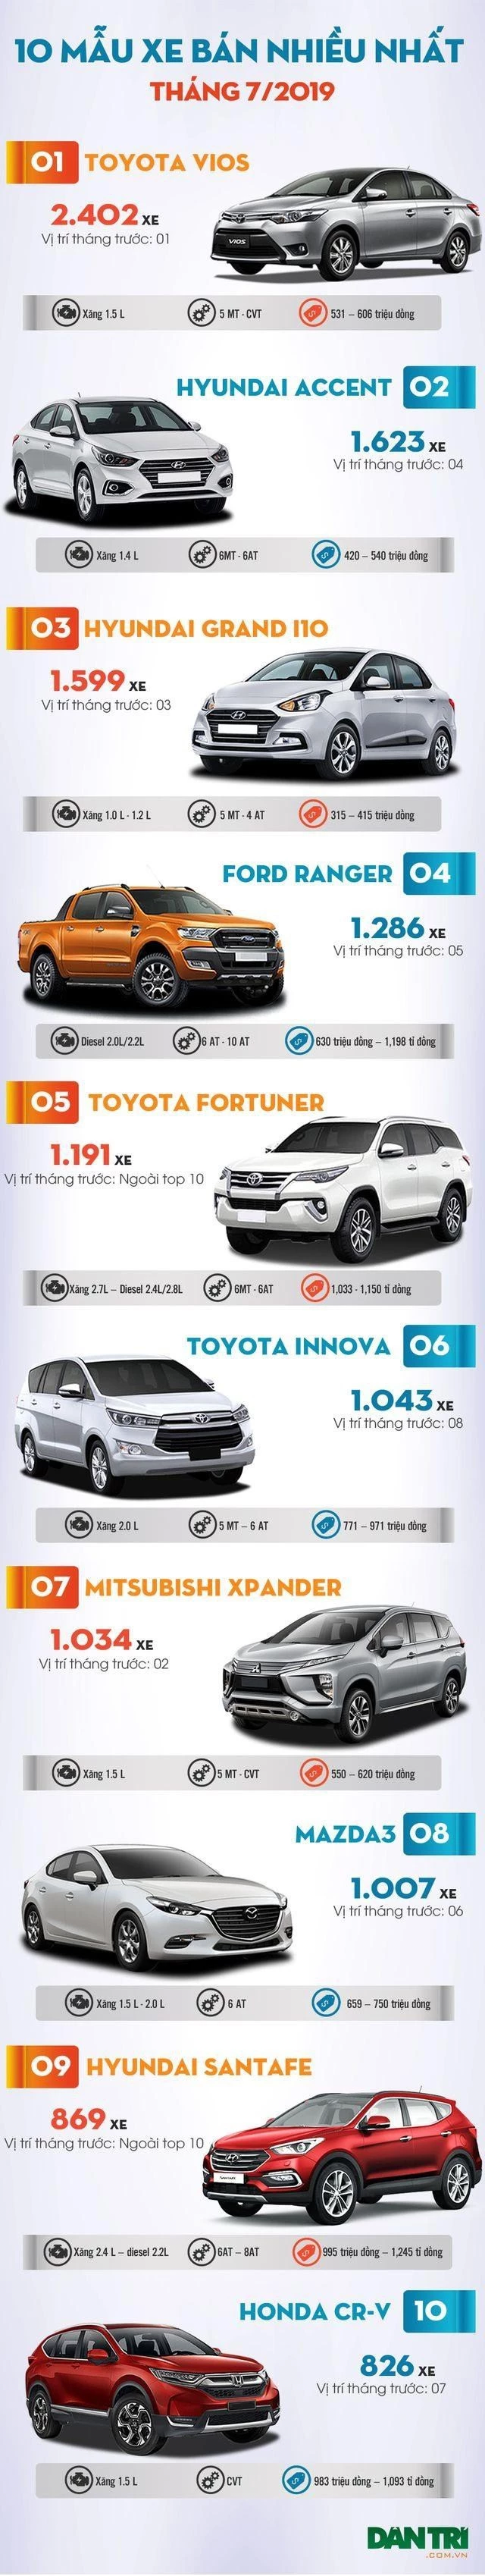 Top 10 mẫu xe bán nhiều nhất Việt Nam tháng 7/2019 - 2